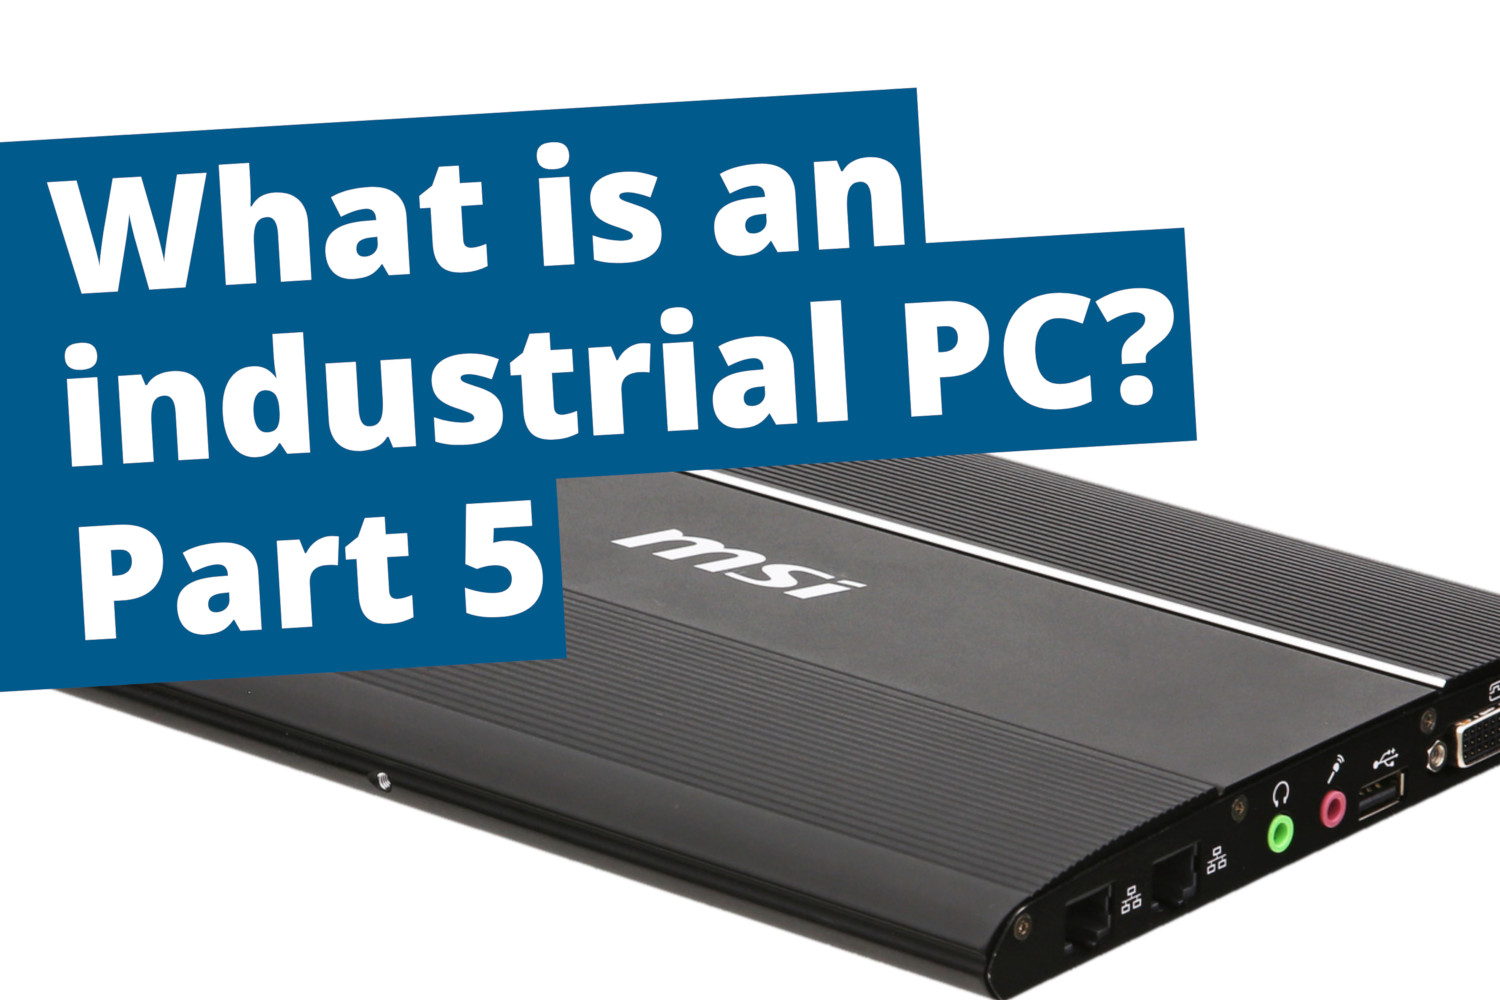 Industrial PCs part 5: Long-term availability